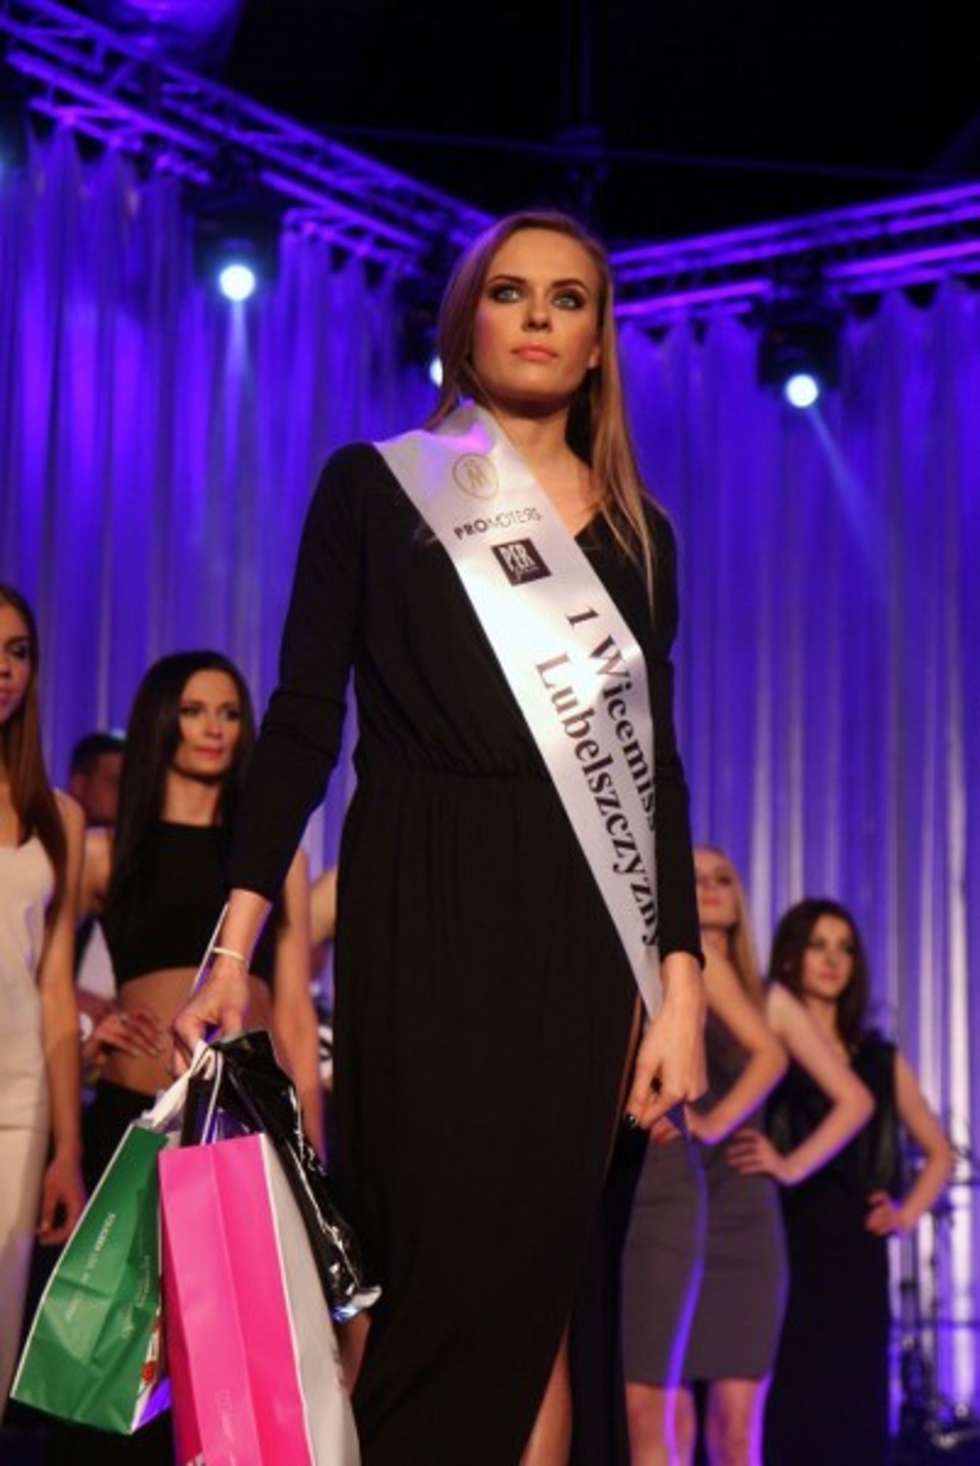  Miss Polski Lubelszczyzny